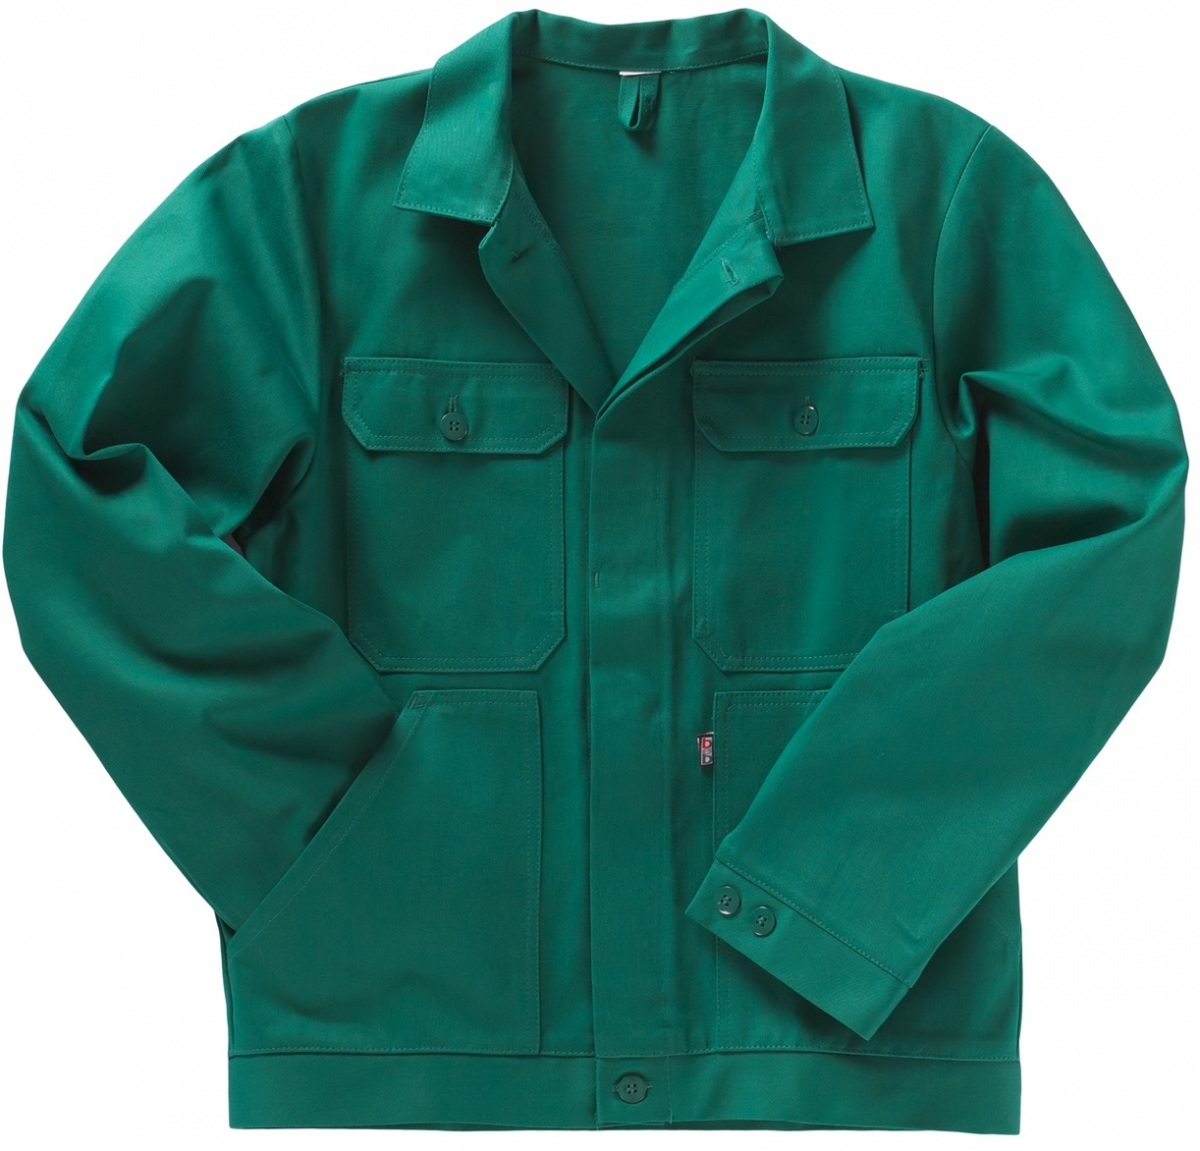 BEB-Bundjacke, Arbeits-Berufs-Jacke, BW 320, grün